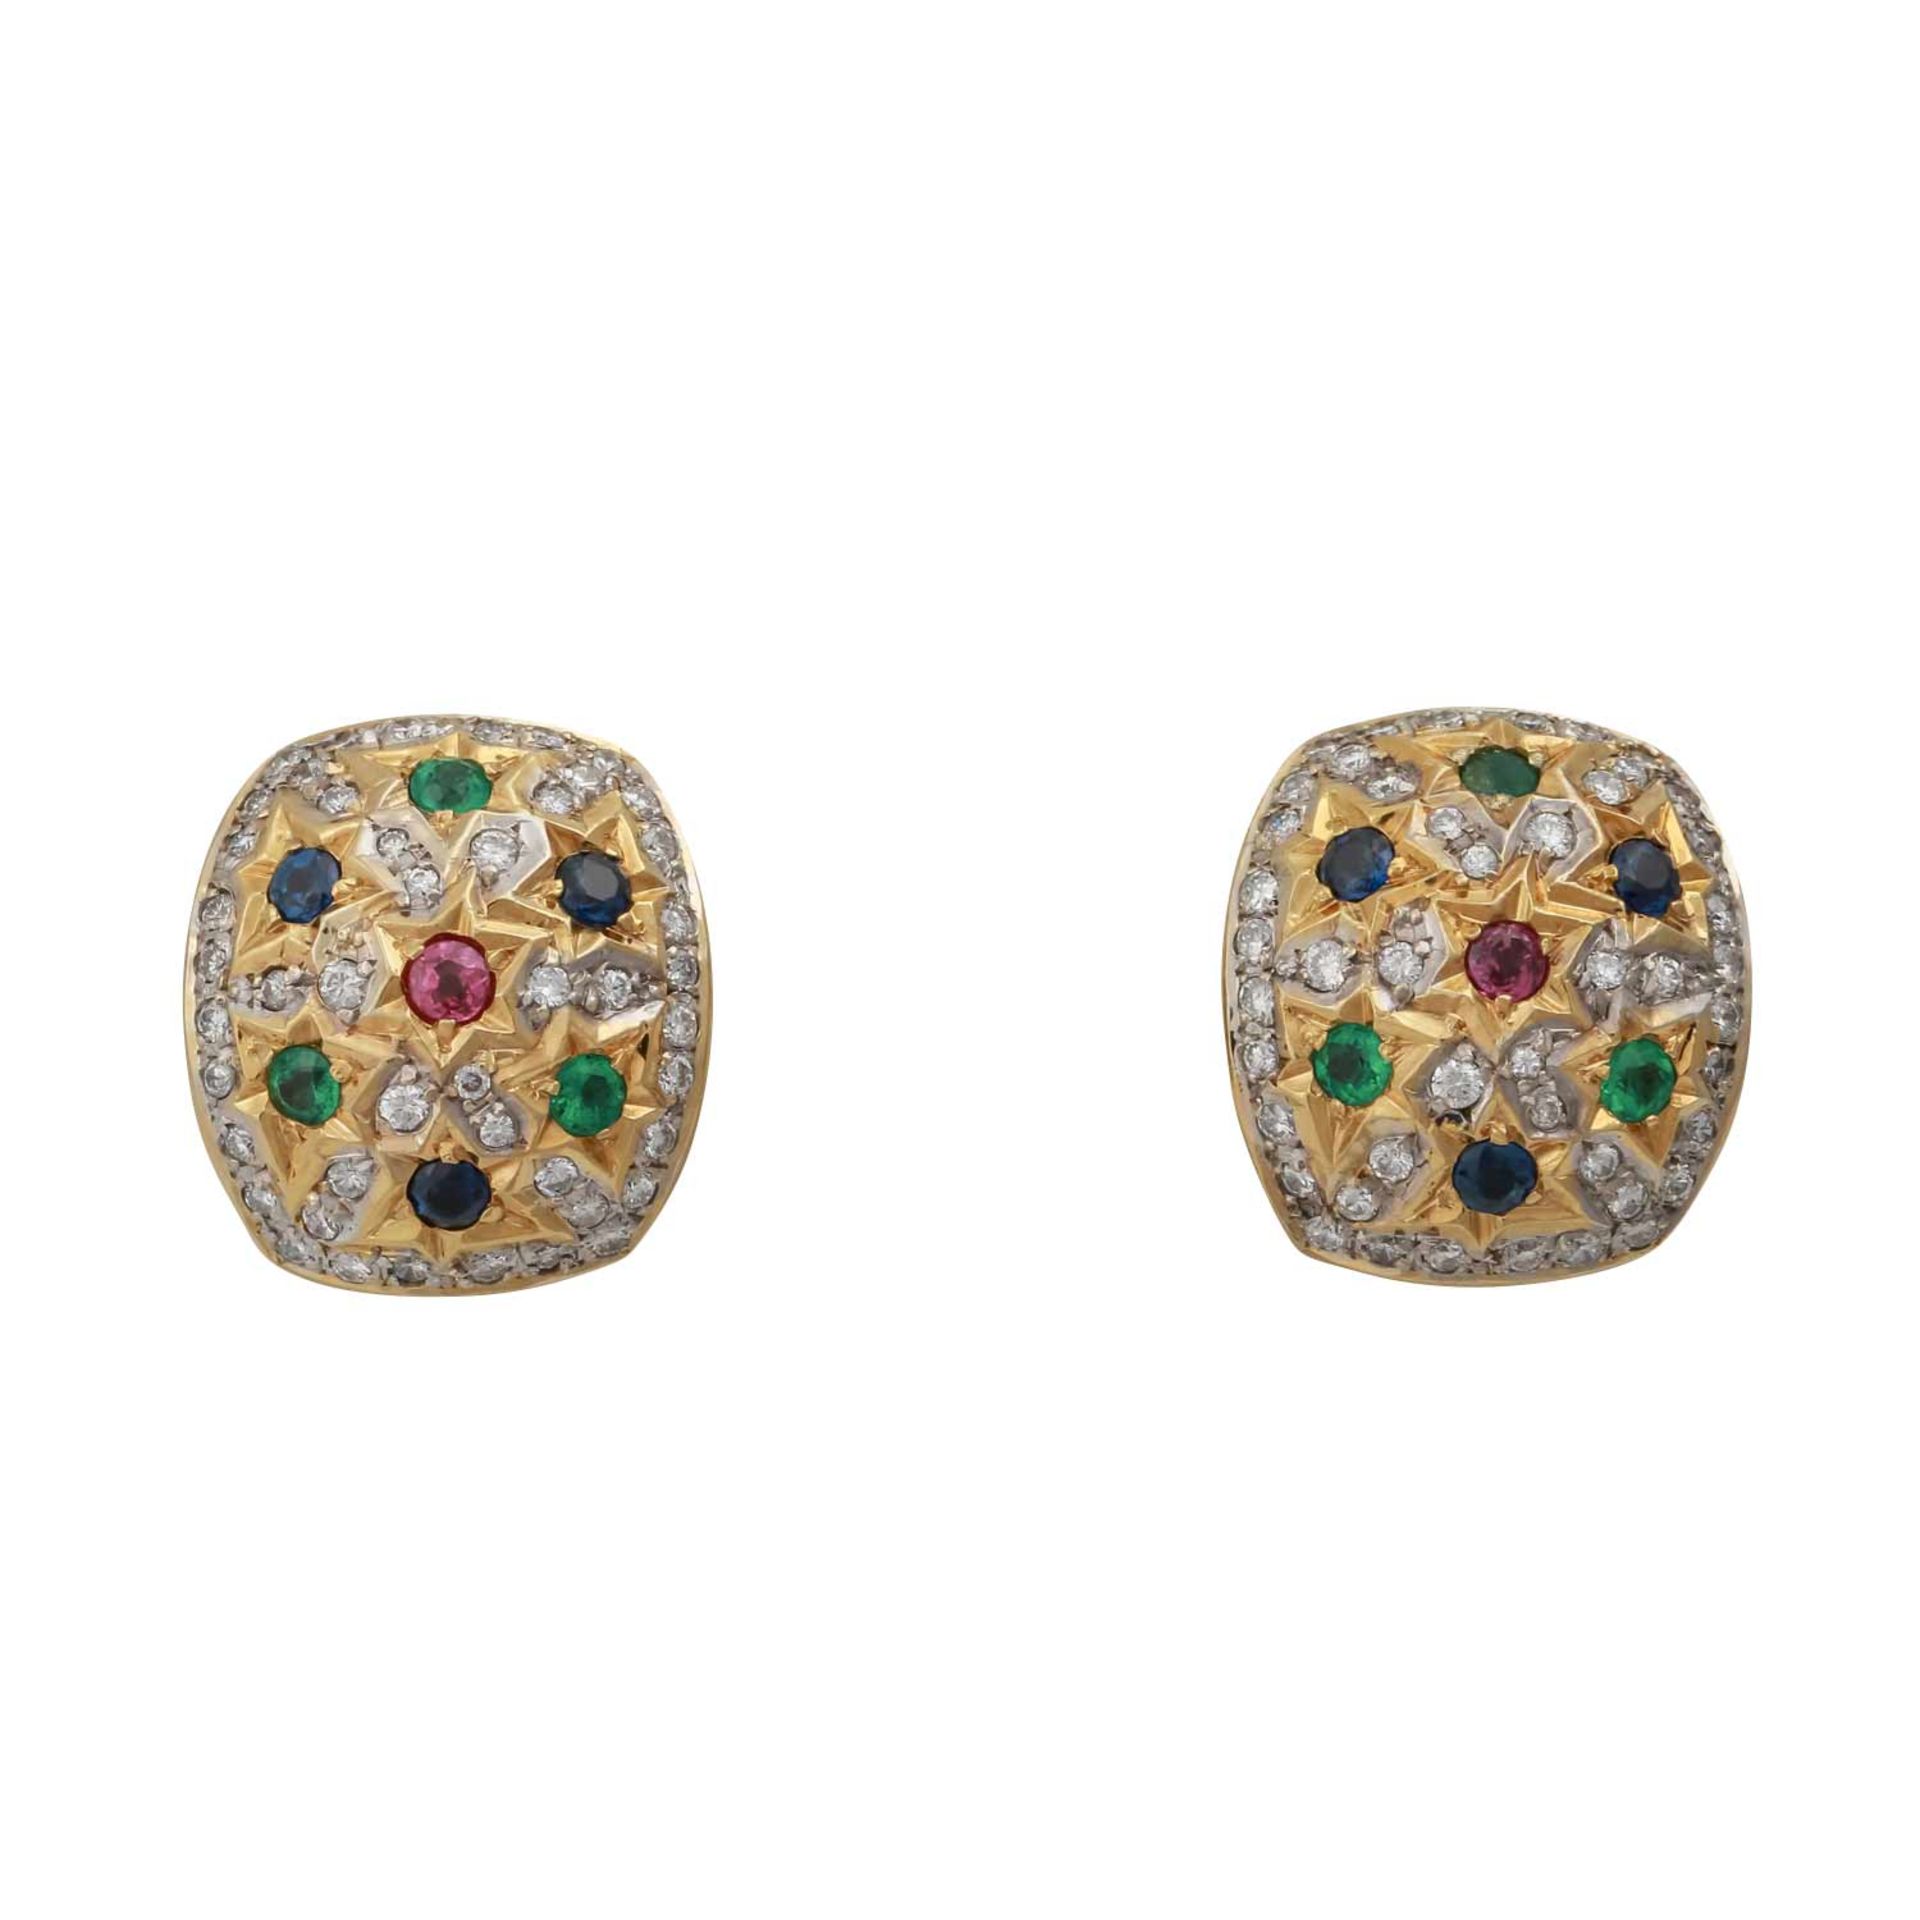 Paar Ohrclips mit Edelsteinen:Brillanten zus. ca. 0,9 ct, mittlere Farbe u. Reinheit, weiter Rubine,